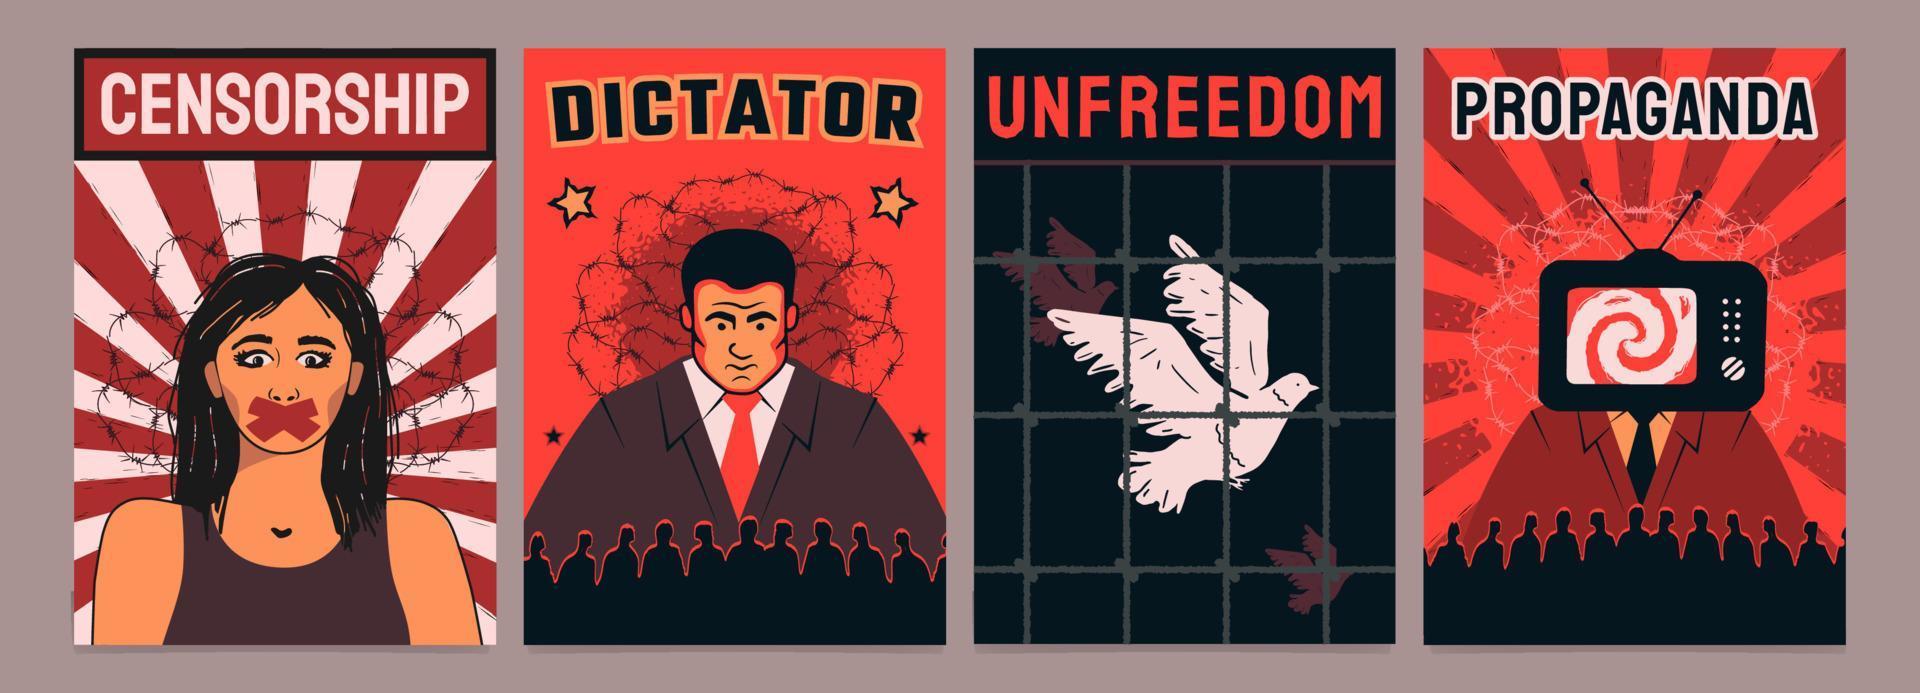 une série d'affiches sur la propagande du régime totalitaire, le dictateur, la censure, la privation de liberté. vecteur